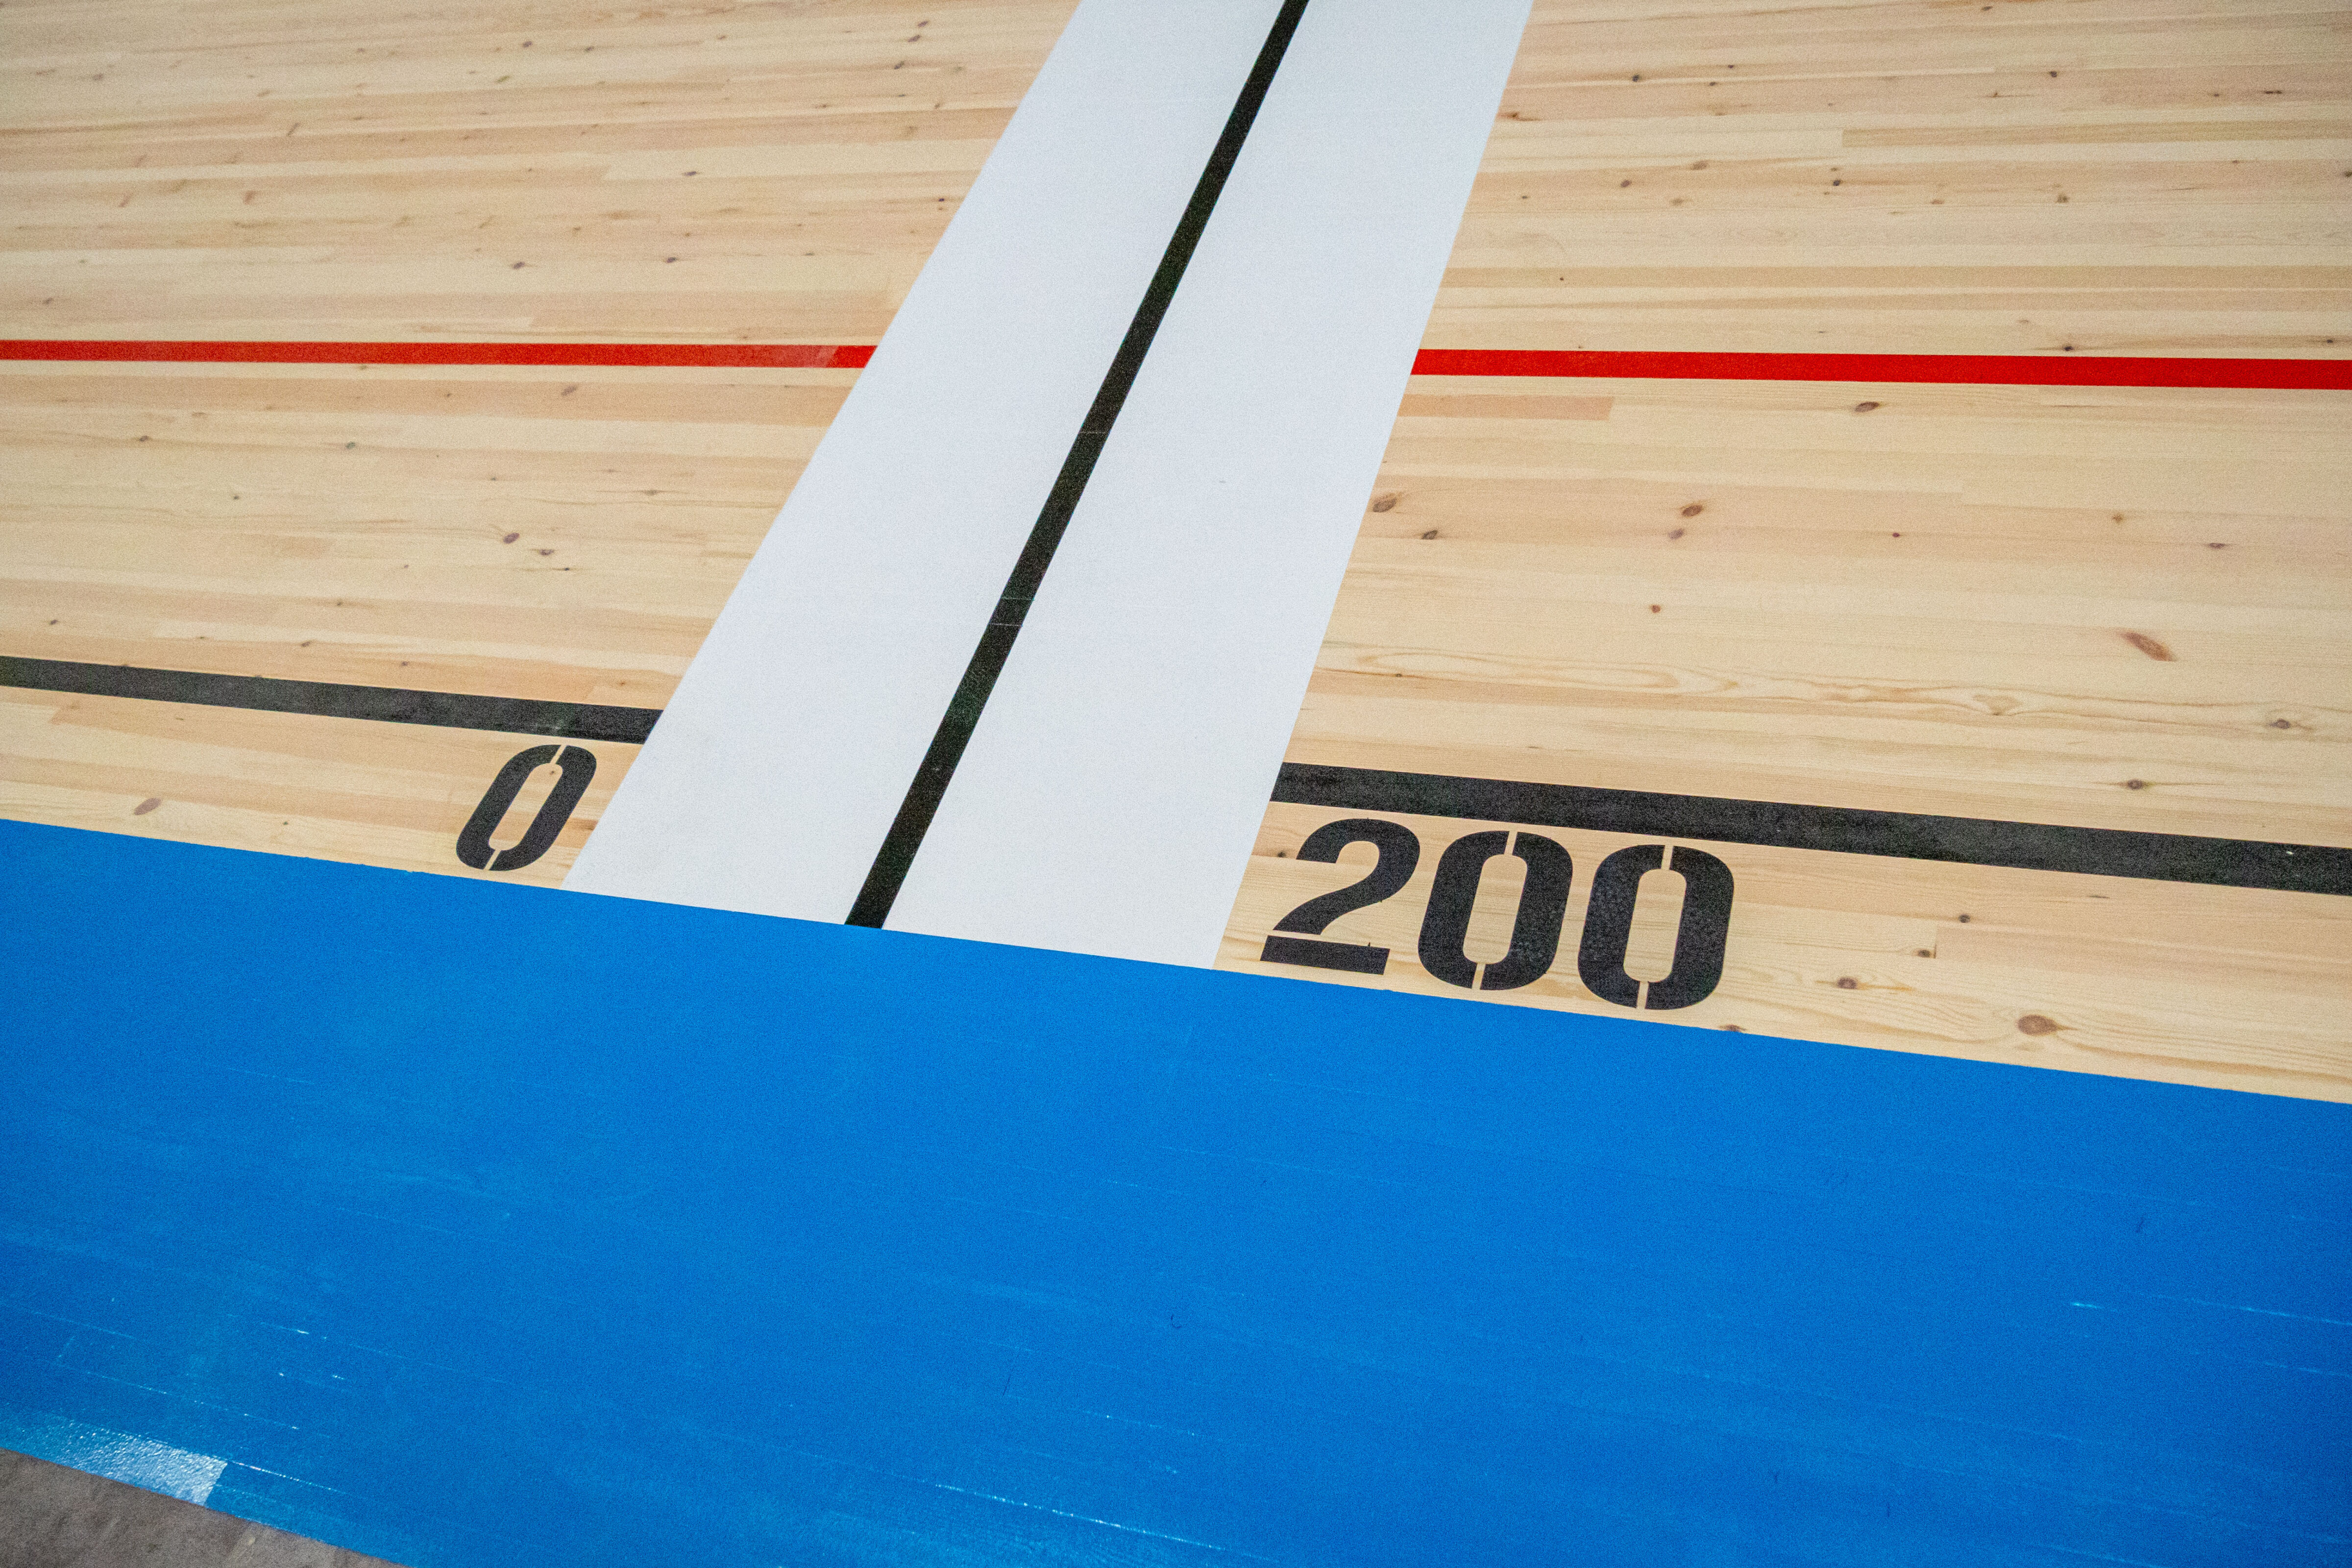 Le Vélodrome de Bretagne vous accueille à Loudéac sur sa piste en bois de 200m